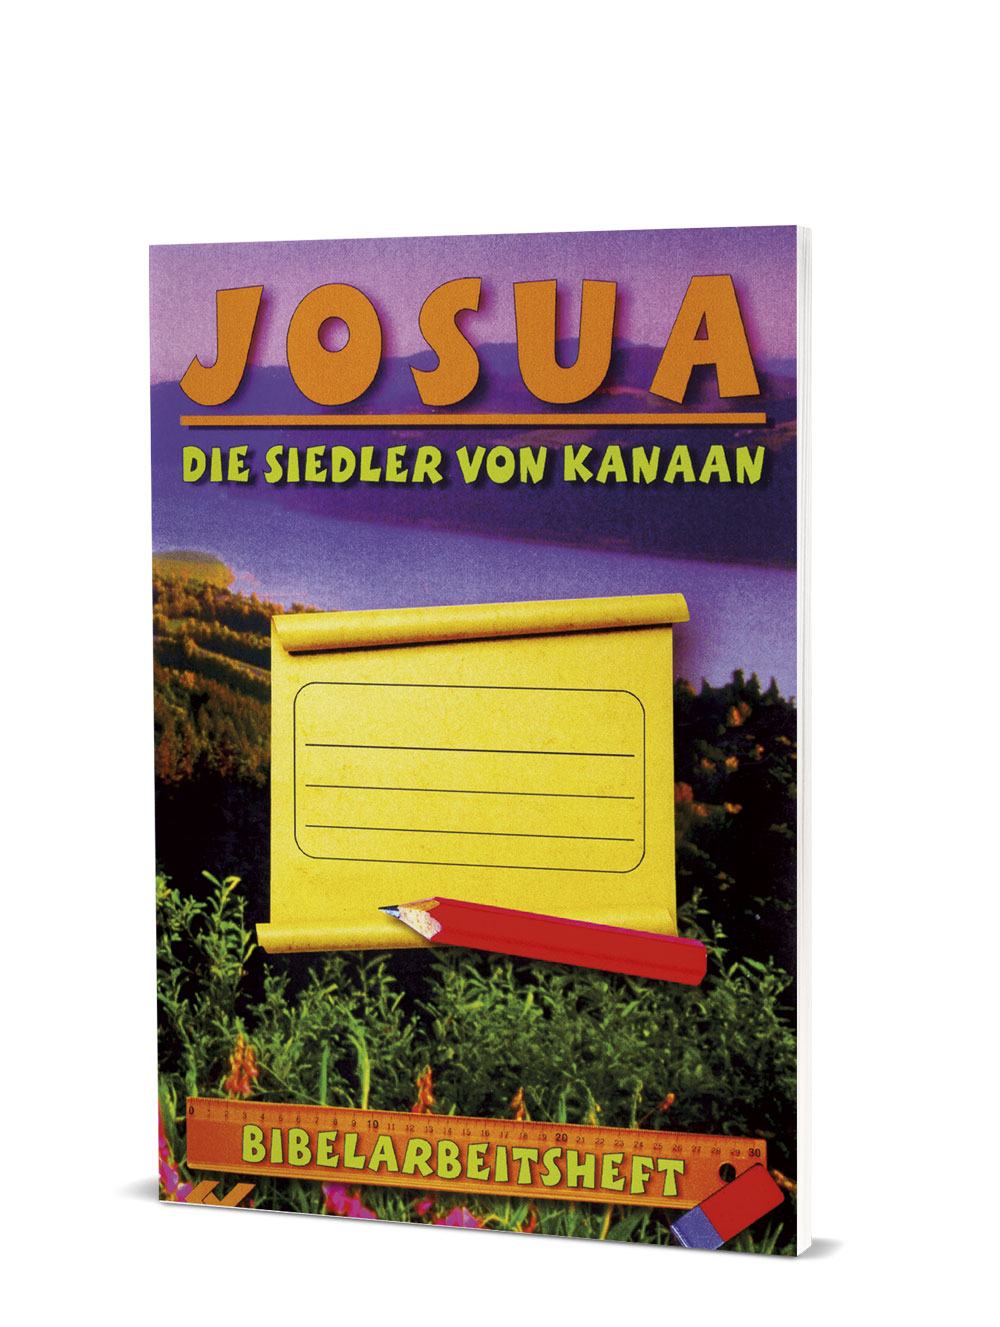 Ralf Kausemann (Hg.): Bibelarbeitsheft - Josua - Die Siedler von Kanaan